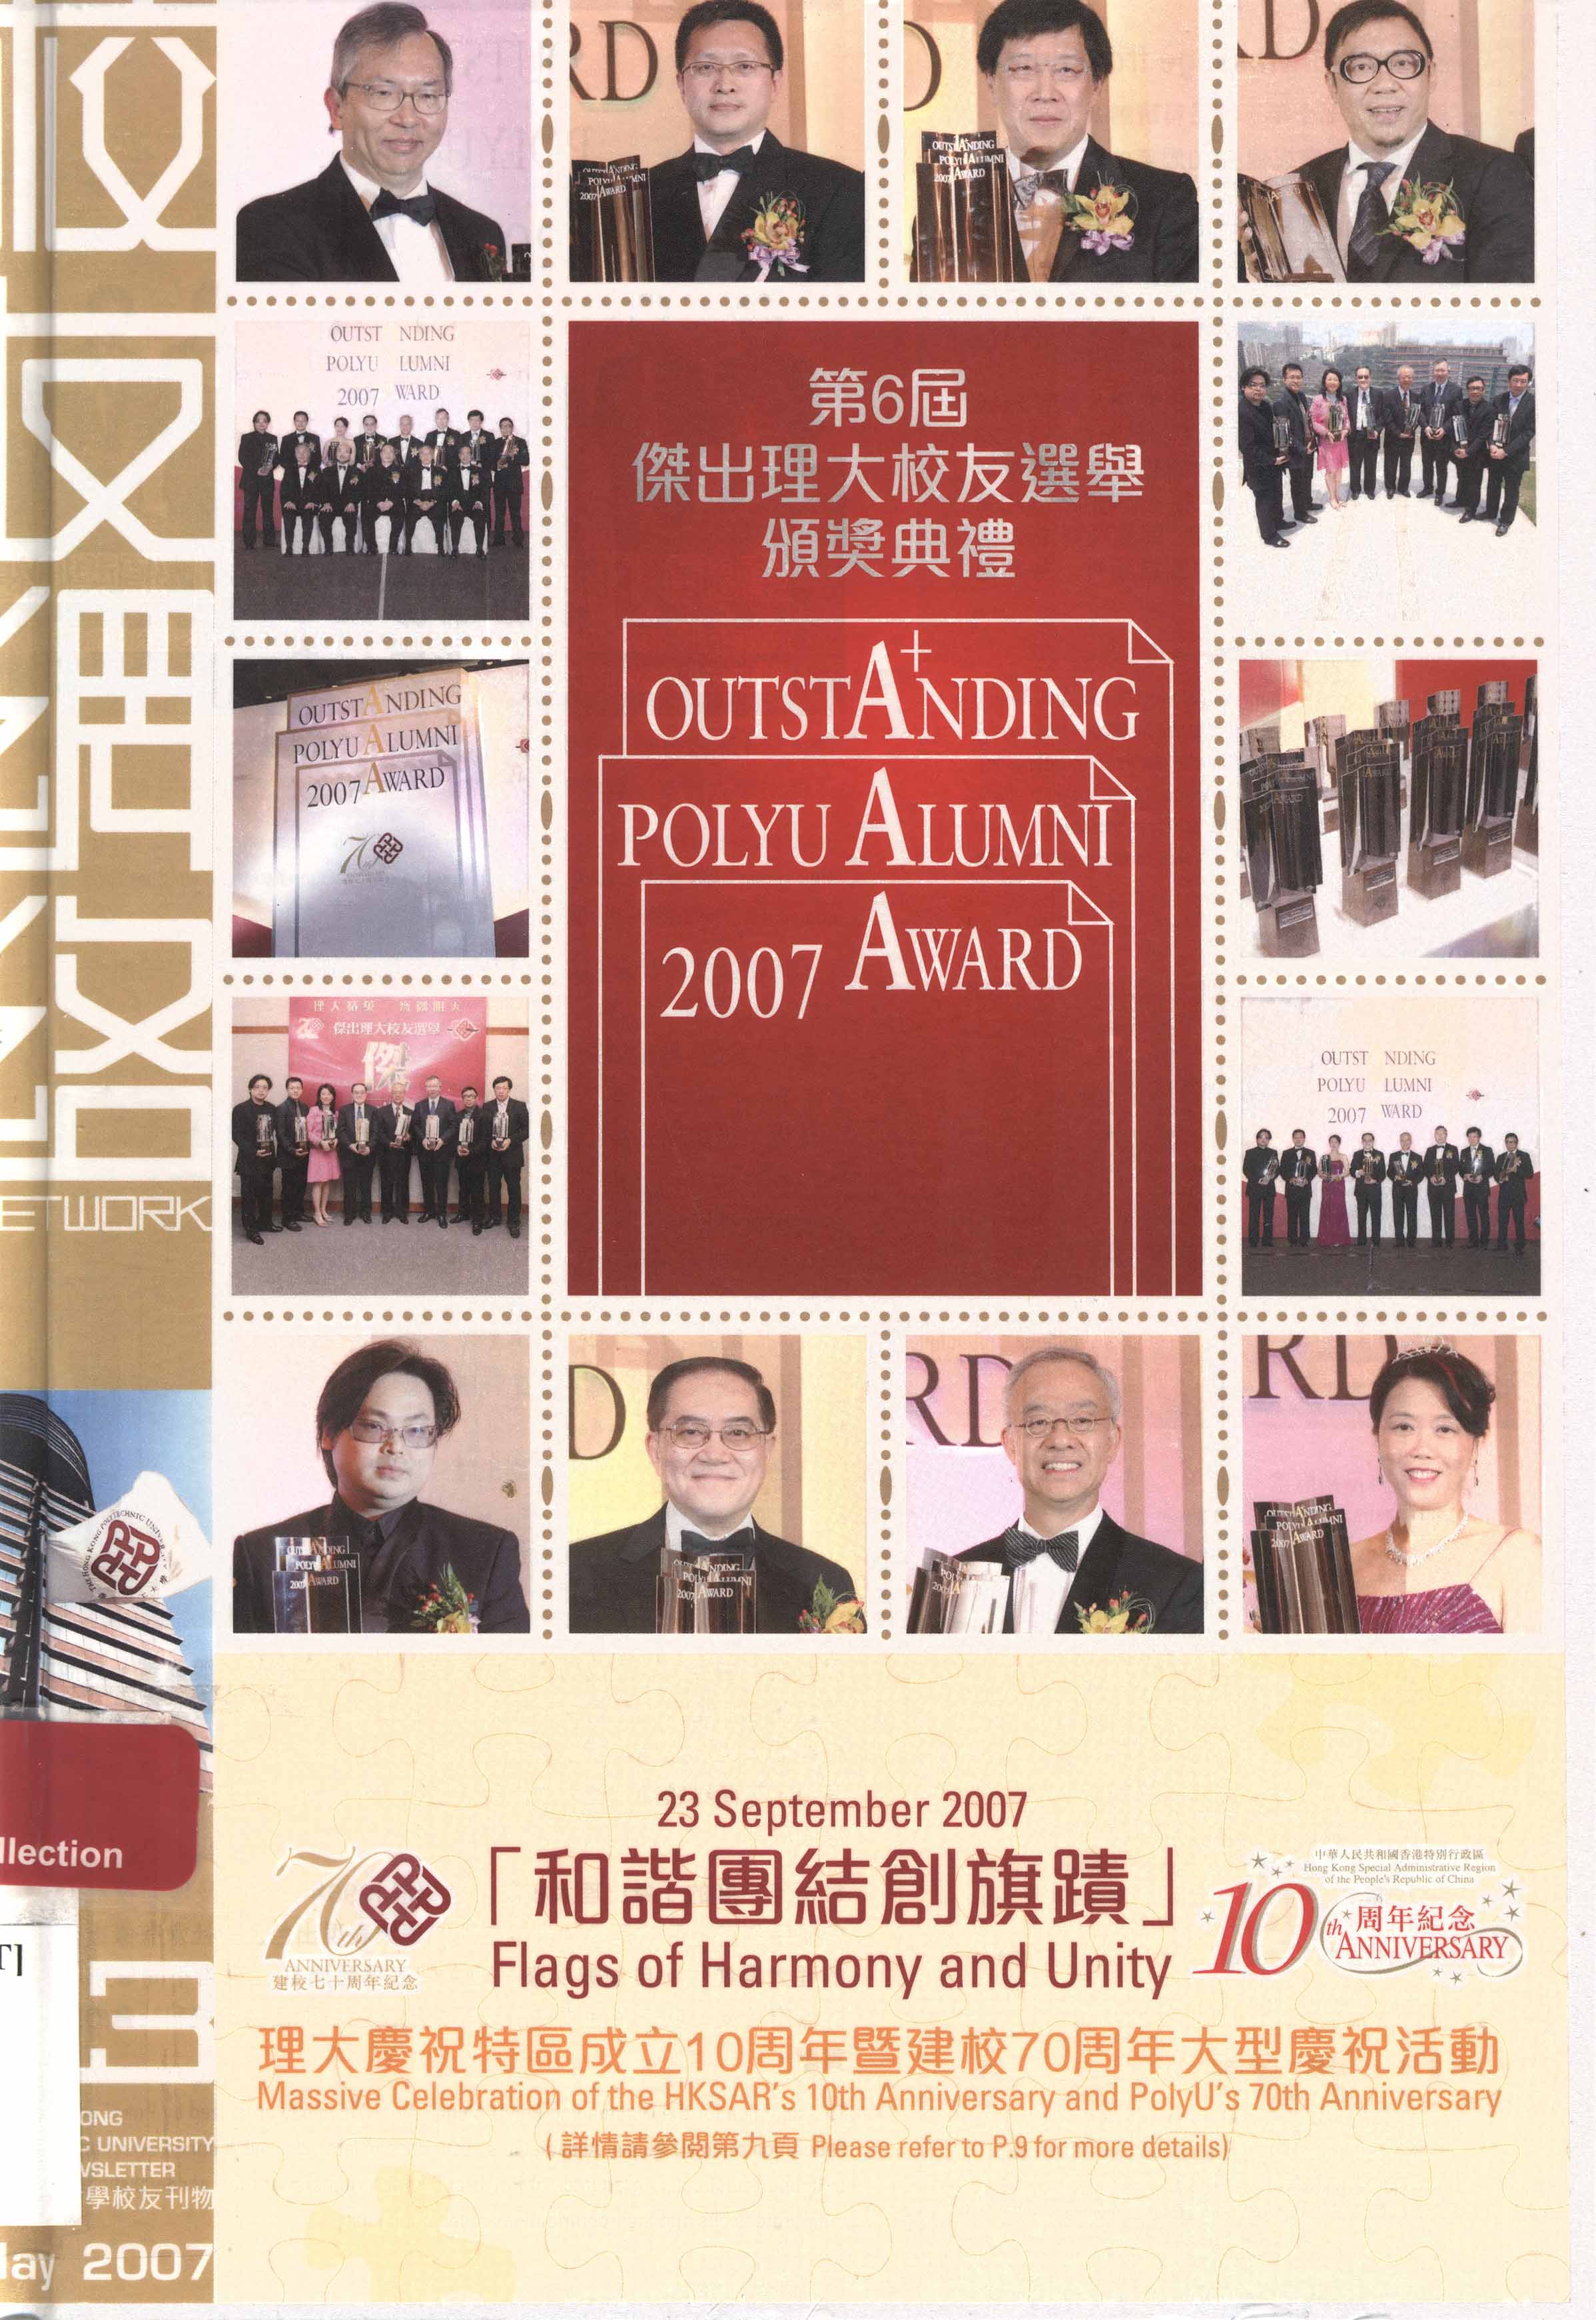 Outstanding Polyu alumni award [2007]